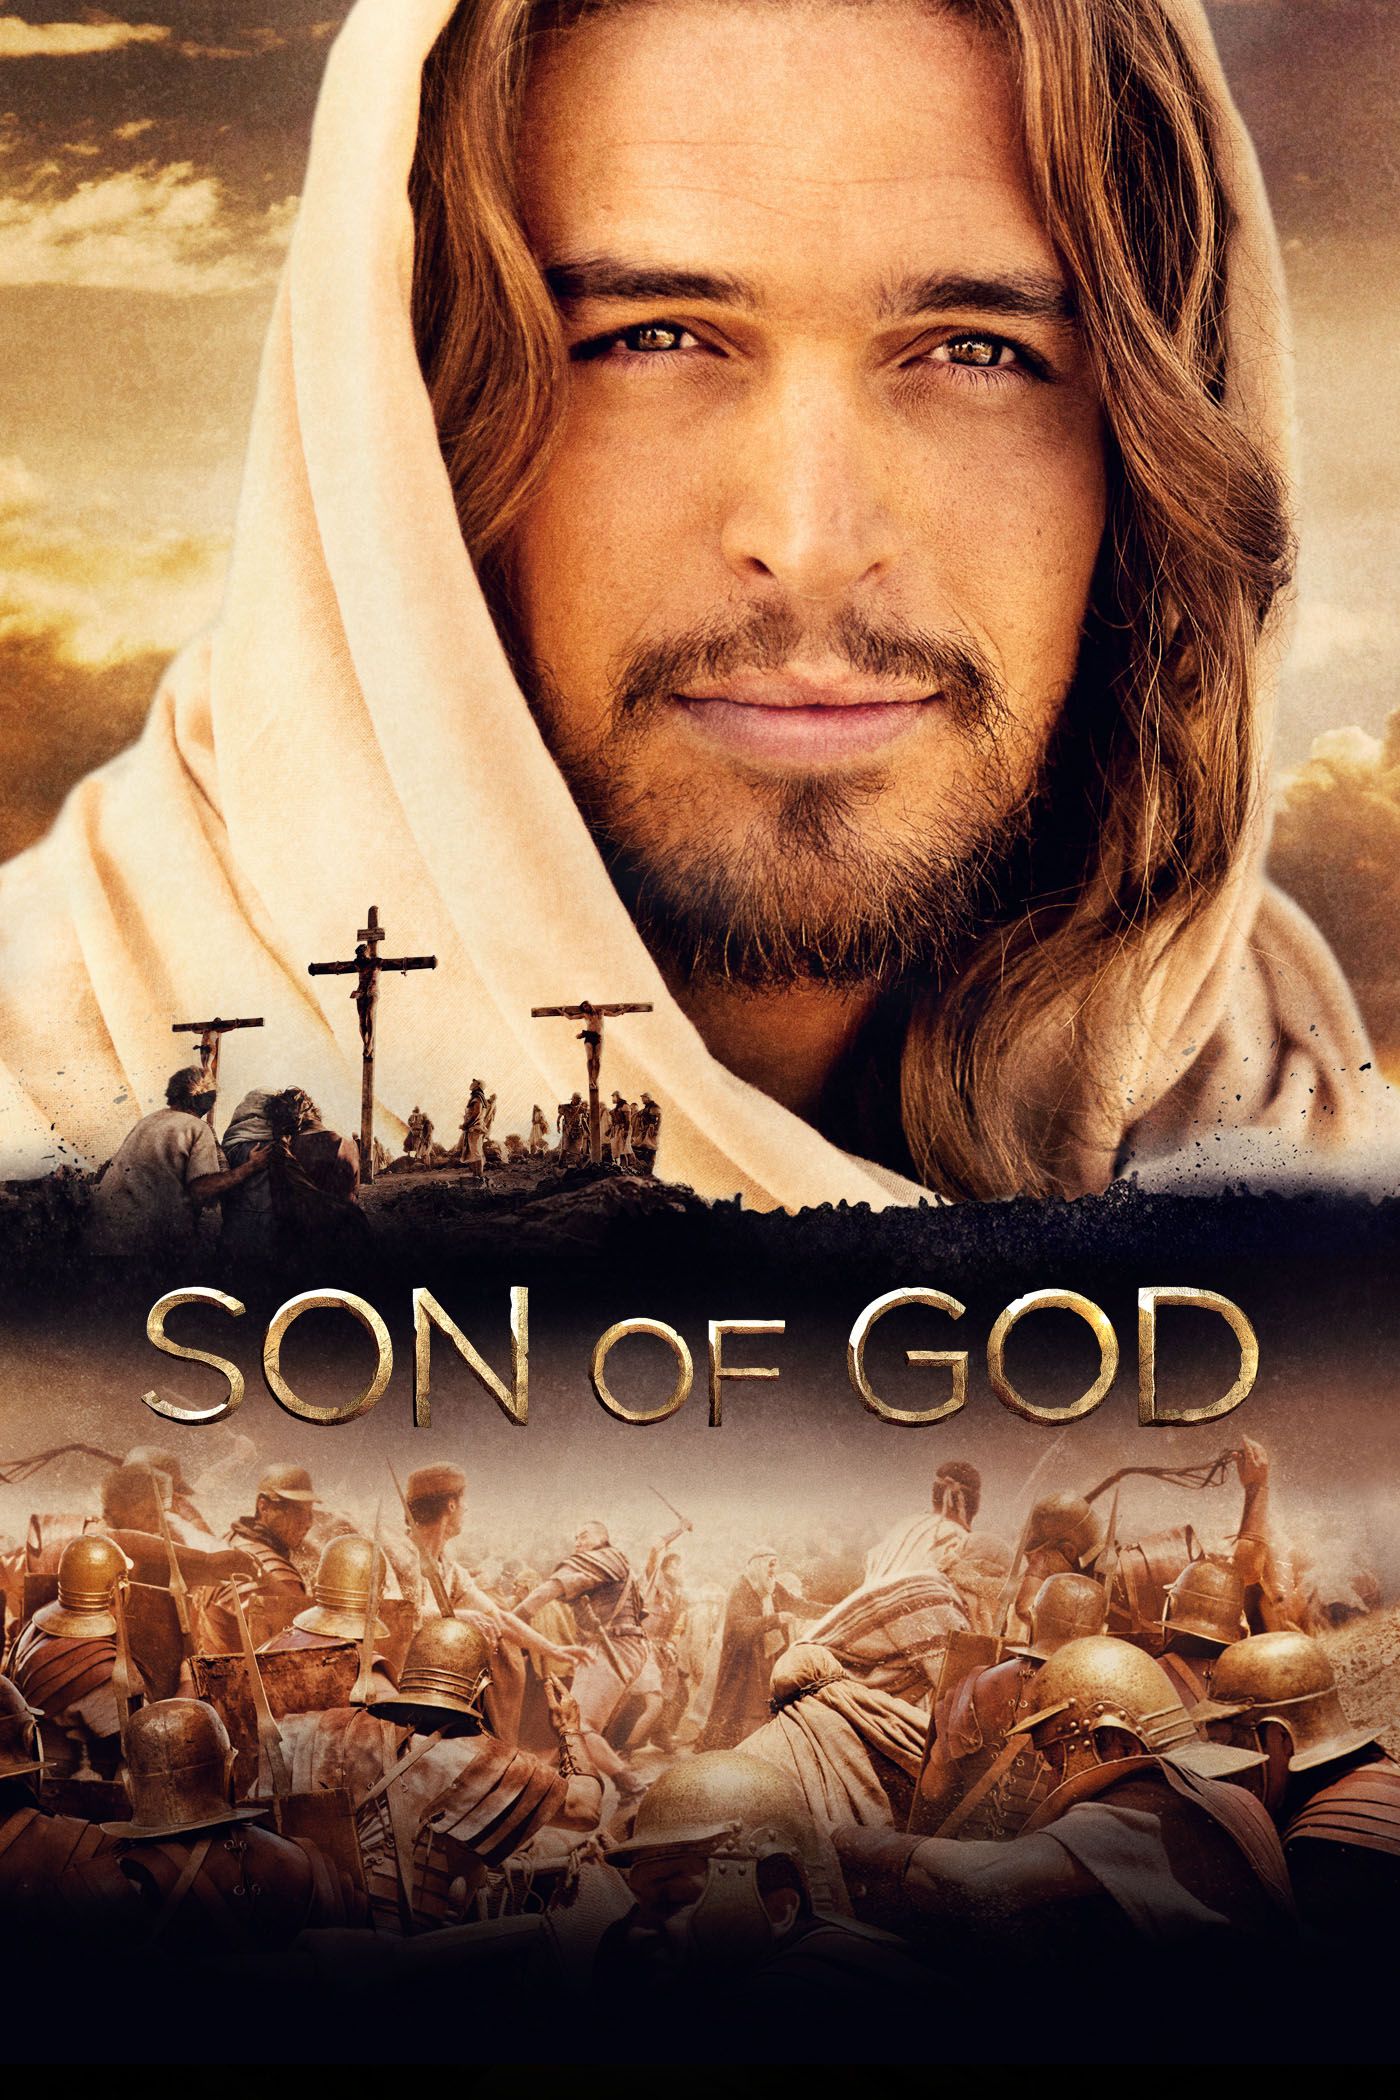 son of god logo